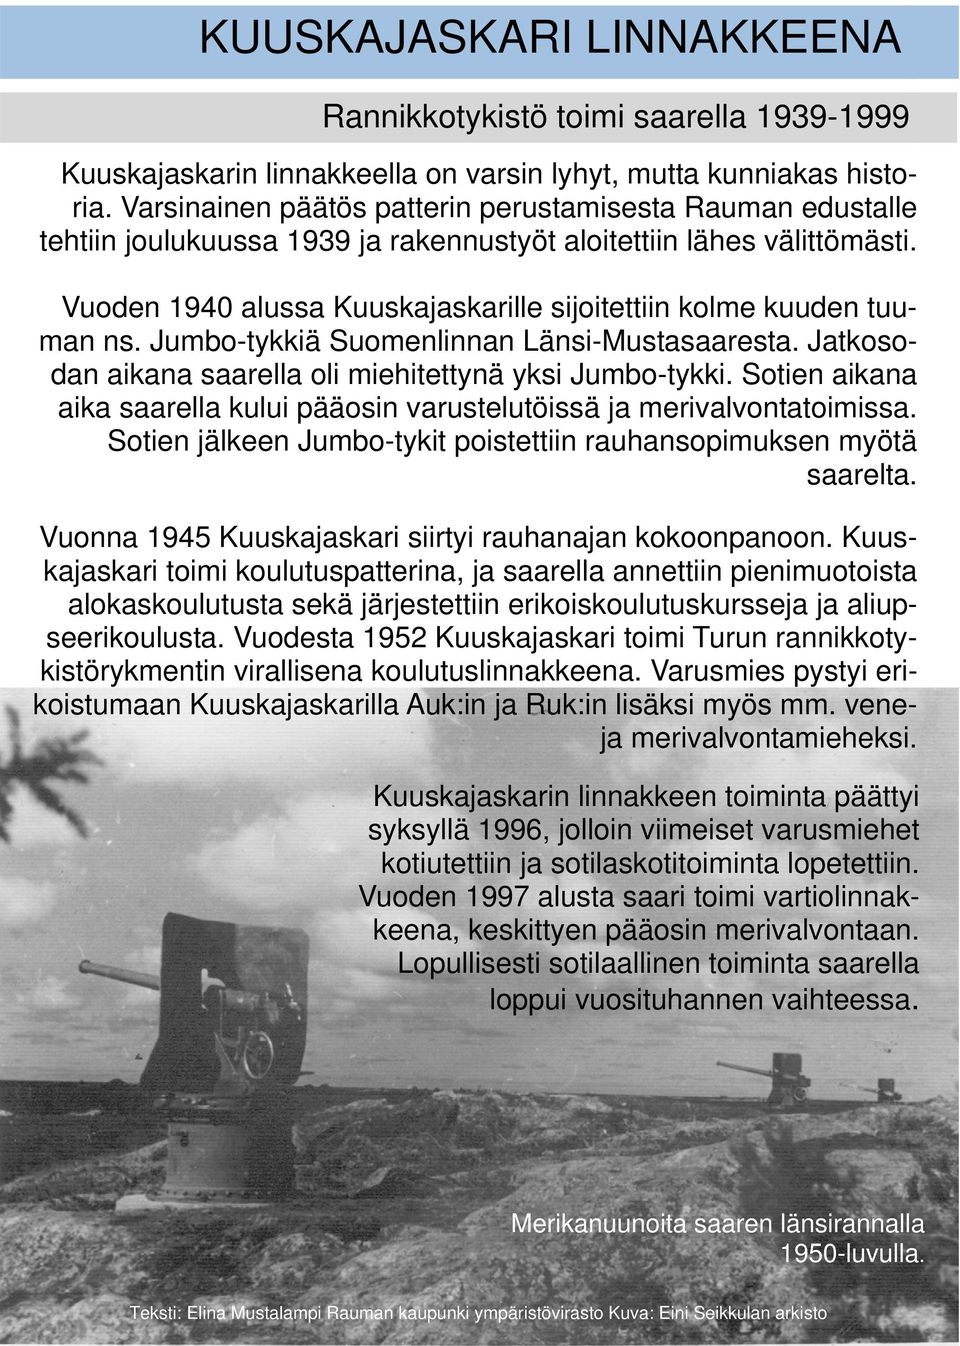 Vuoden 1940 alussa Kuuskajaskarille sijoitettiin kolme kuuden tuuman ns. Jumbo-tykkiä Suomenlinnan Länsi-Mustasaaresta. Jatkosodan aikana saarella oli miehitettynä yksi Jumbo-tykki.